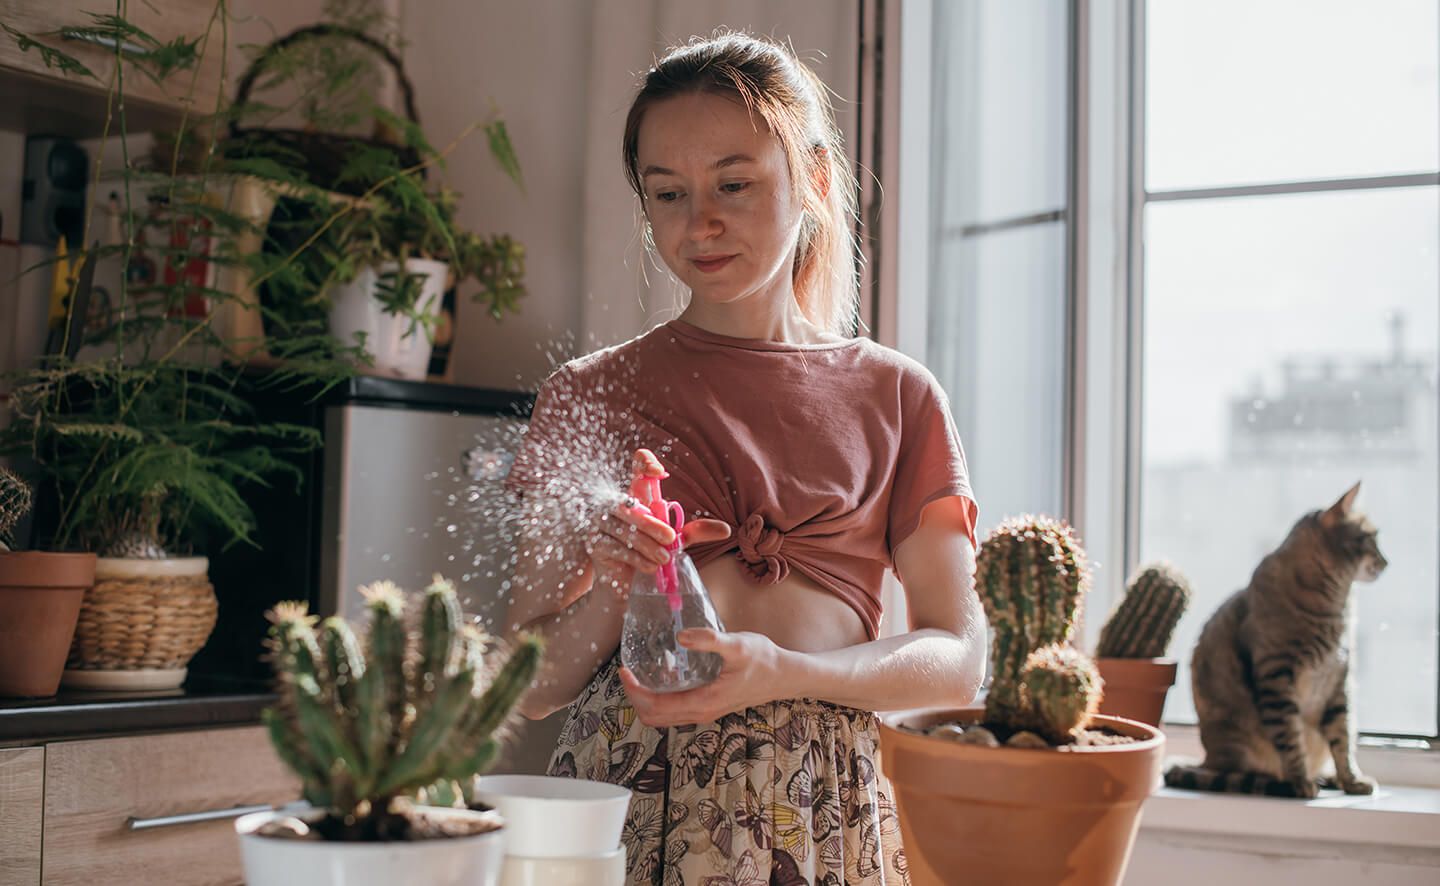 Ung kvinna i sin bostad planterar om en kaktus